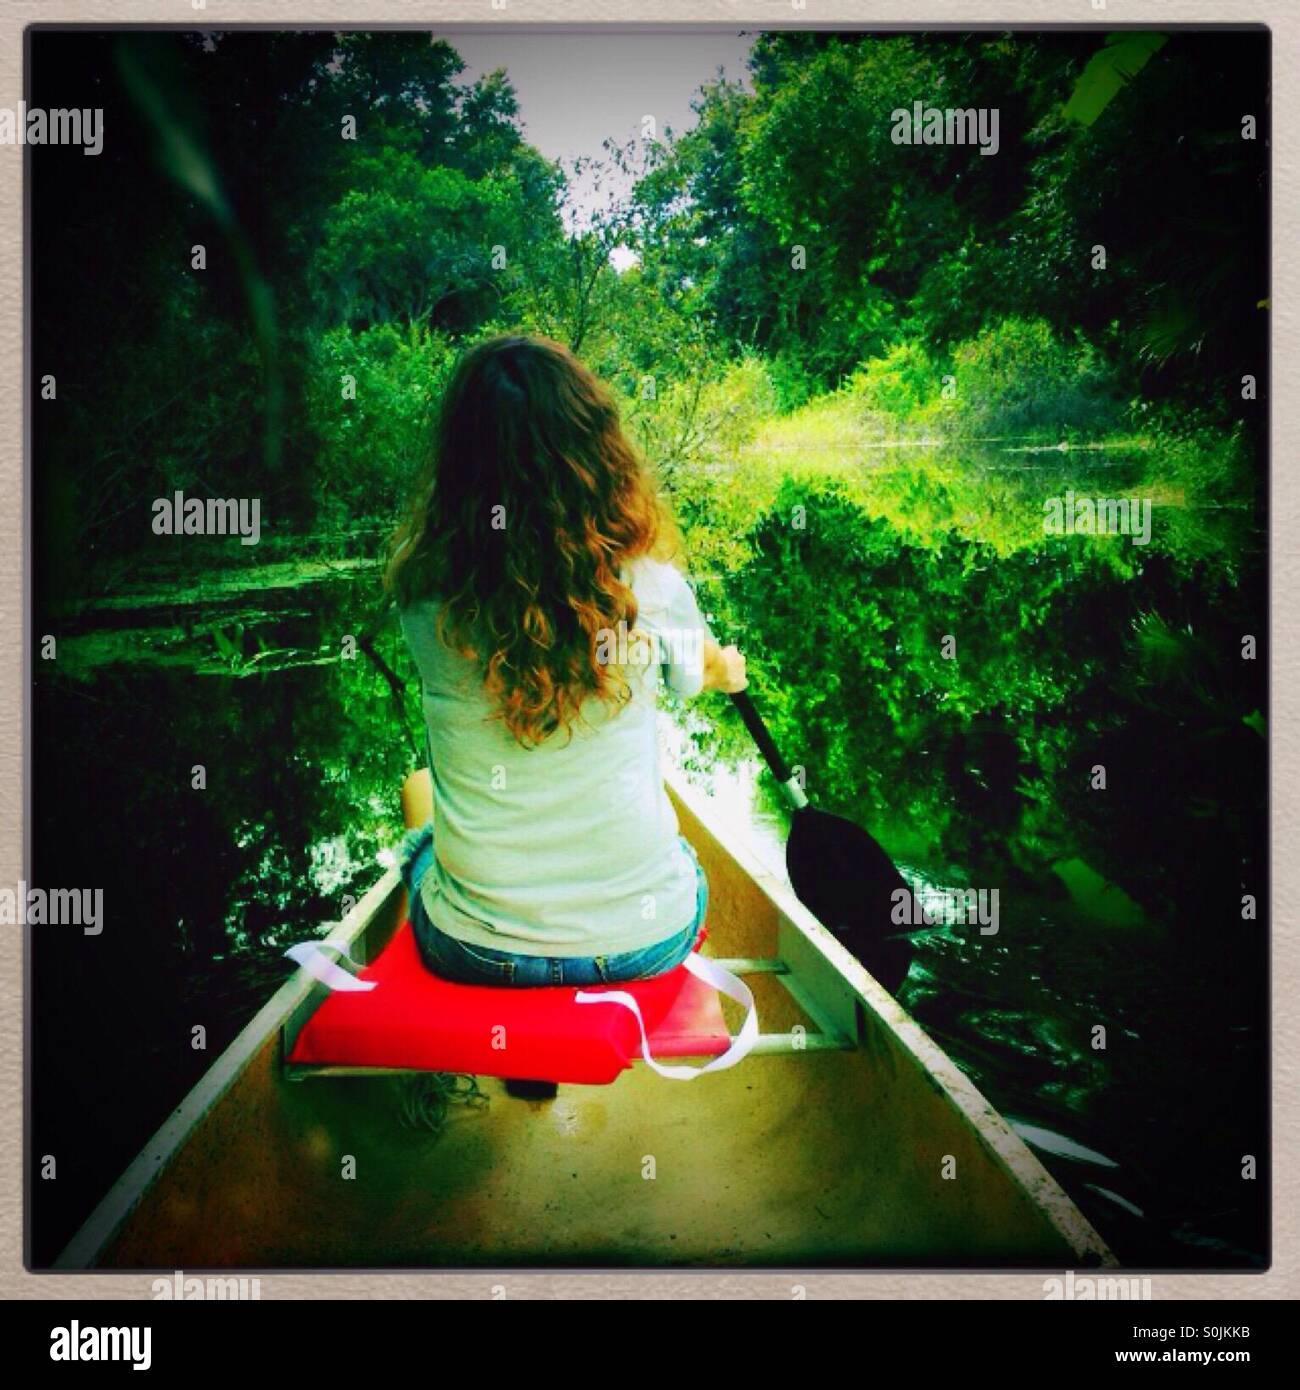 Woman paddling a canoe Stock Photo